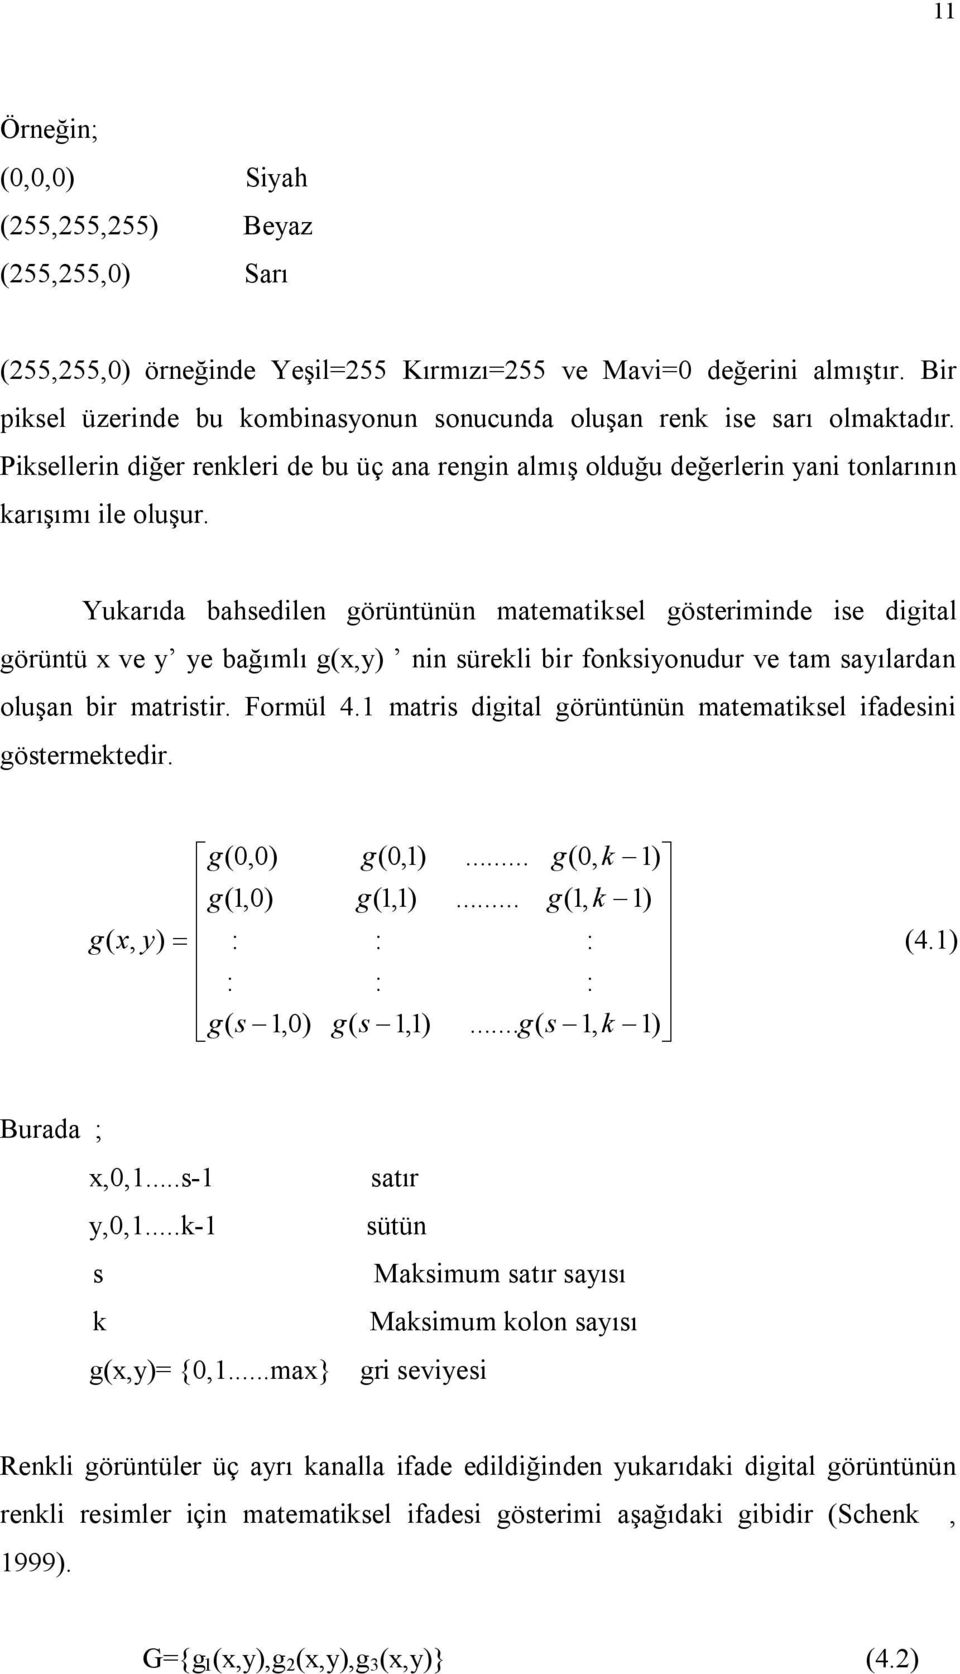 Yukarıda bahsedilen görüntünün matematiksel gösteriminde ise digital görüntü x ve y ye bağımlı g(x,y) nin sürekli bir fonksiyonudur ve tam sayılardan oluşan bir matristir. Formül 4.